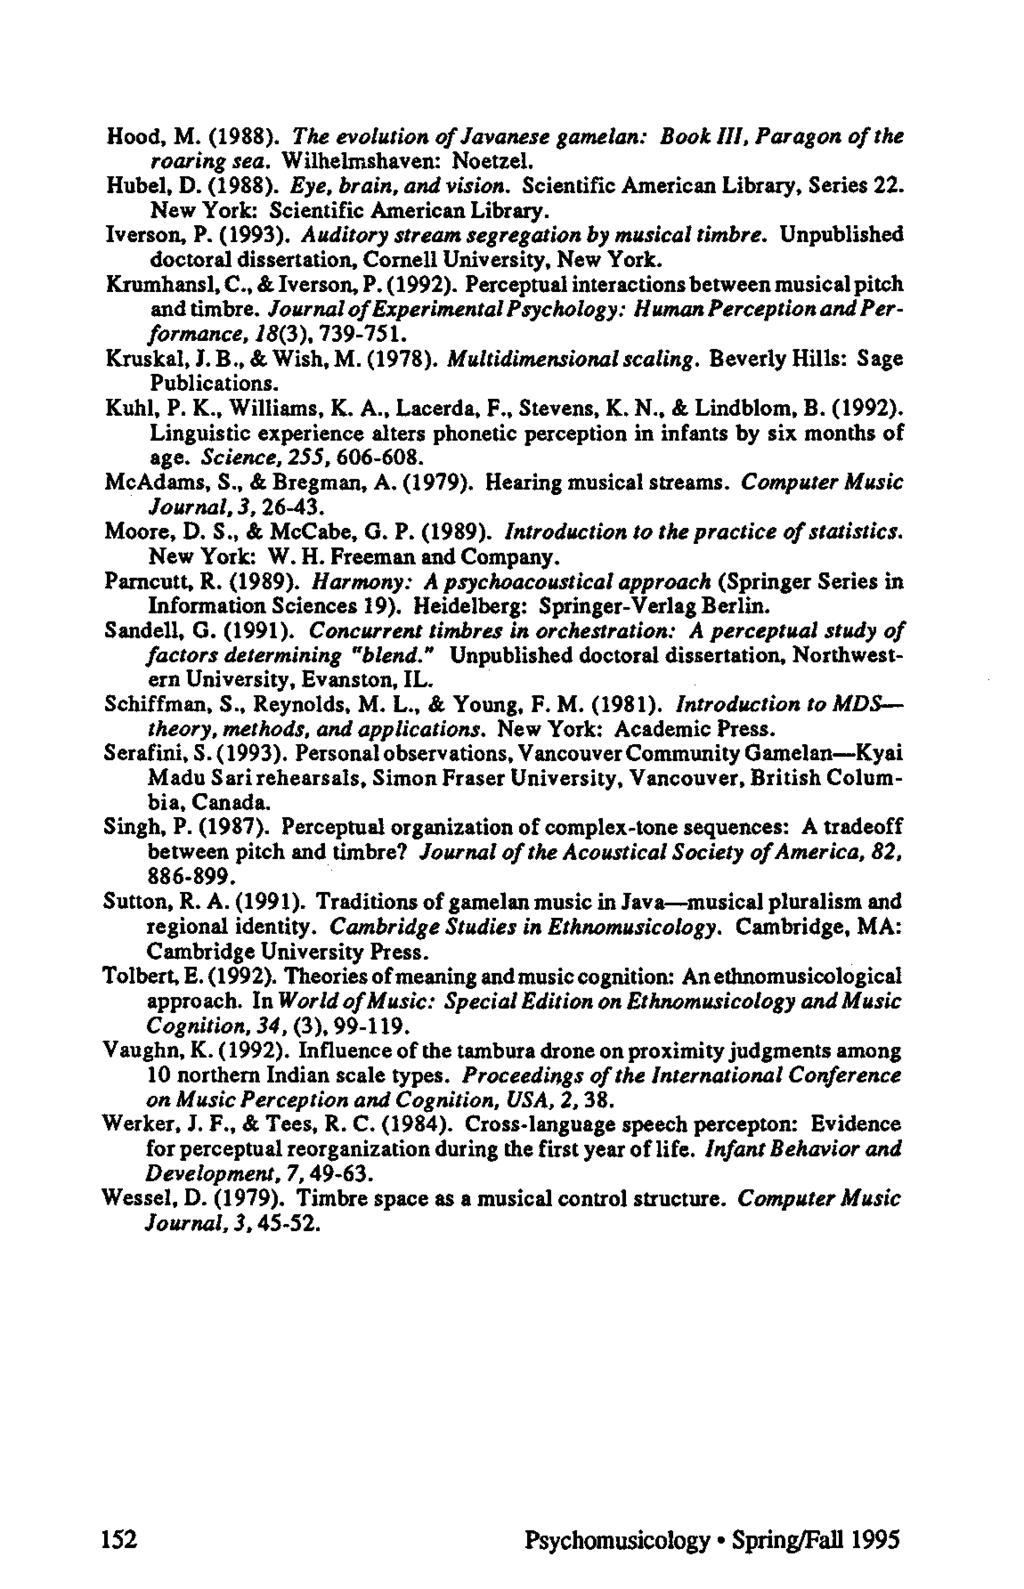 Hood, M. (1988). The evolution of Javanese gamelan: Book III, Paragon of the roaring sea. Wilhelmshaven: Noetzel. Hubel, D. (1988). Eye, brain, and vision. Scientific American Library, Series 22.